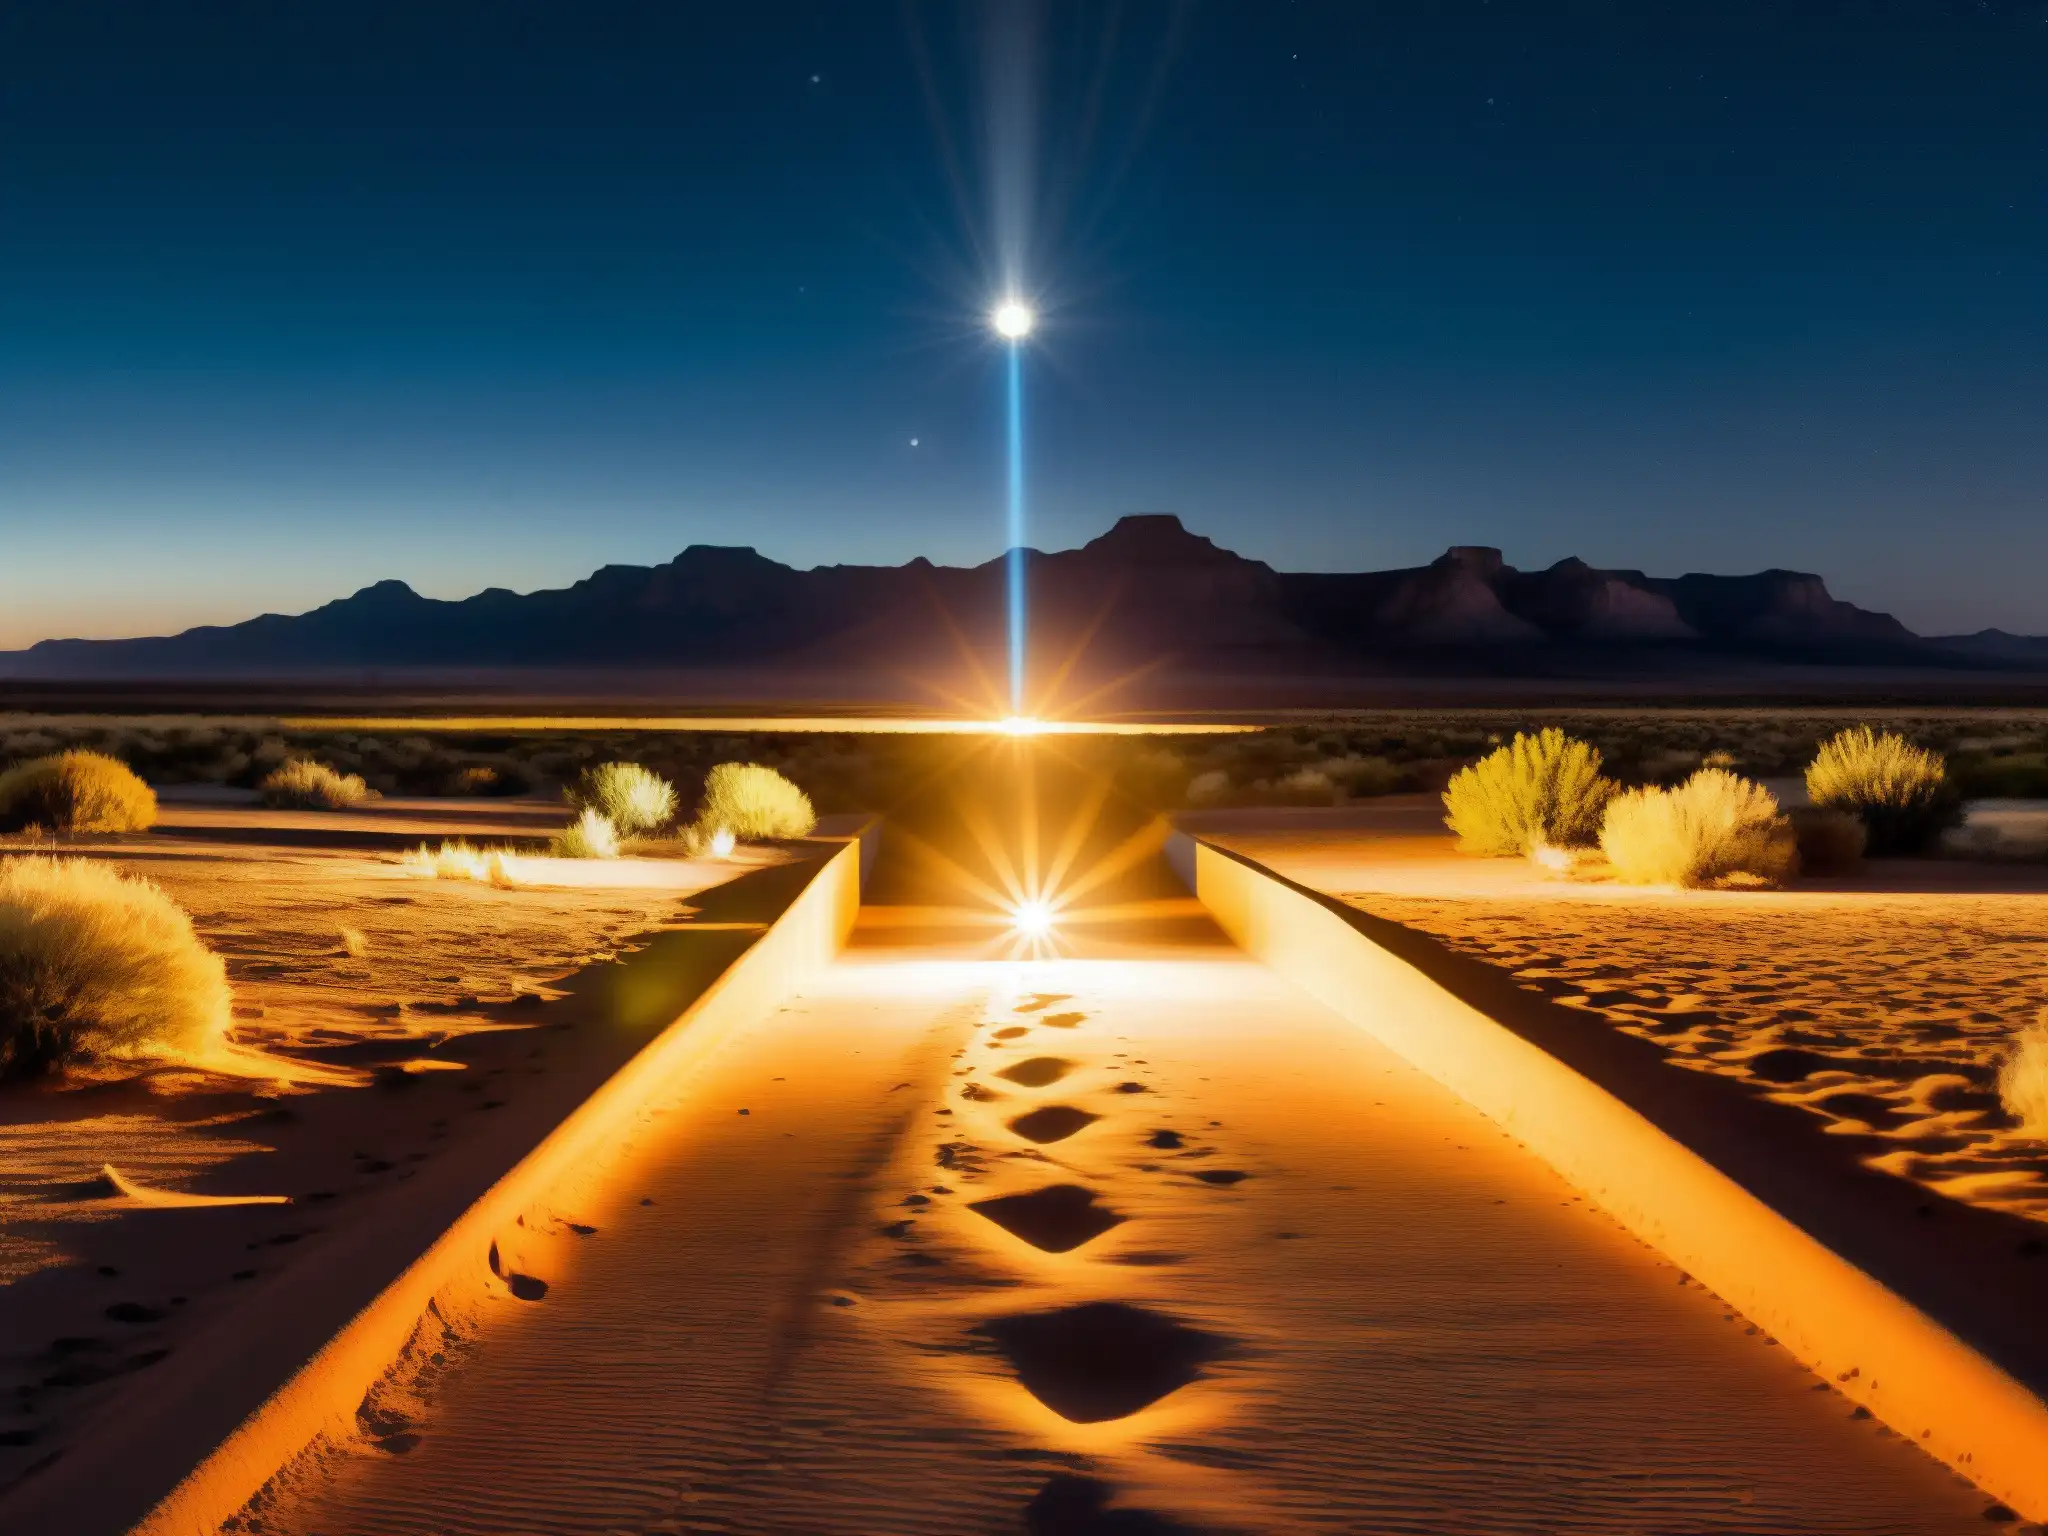 Misteriosas luces de Marfa en Texas iluminando el desierto en la noche, evocando su enigma y misticismo